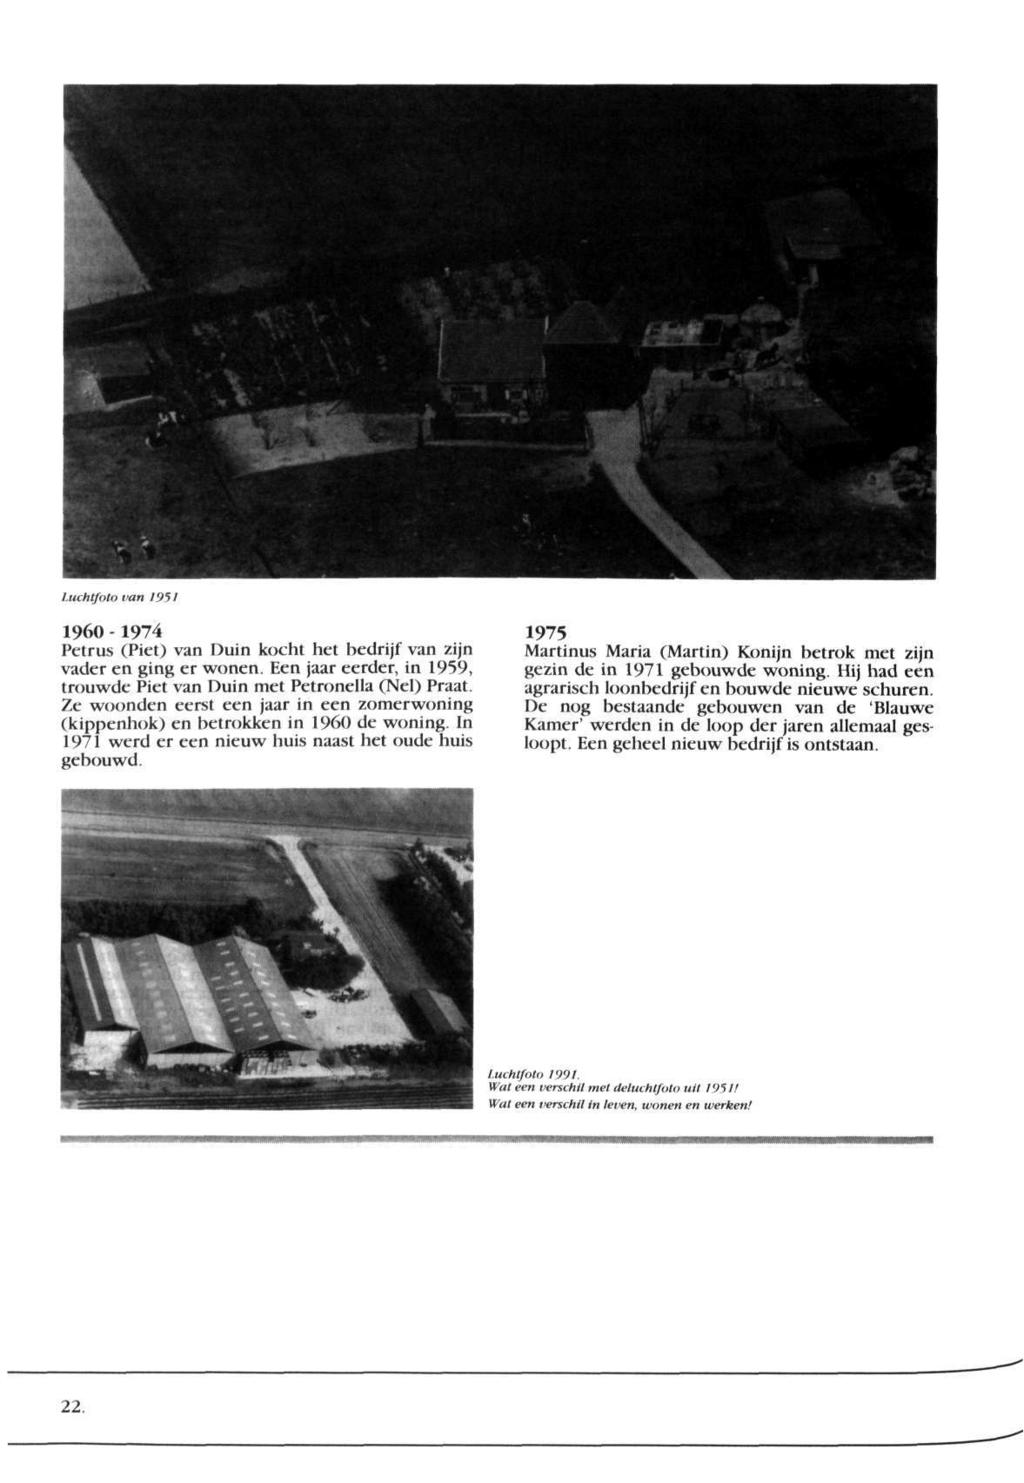 Luchtfoto van 1951 1960-1974 Petrus (Piet) van Duin kocht het bedrijf van zijn vader en ging er wonen. Een jaar eerder, in 1959, trouwde Piet van Duin met Petronella (Nel) Praat.